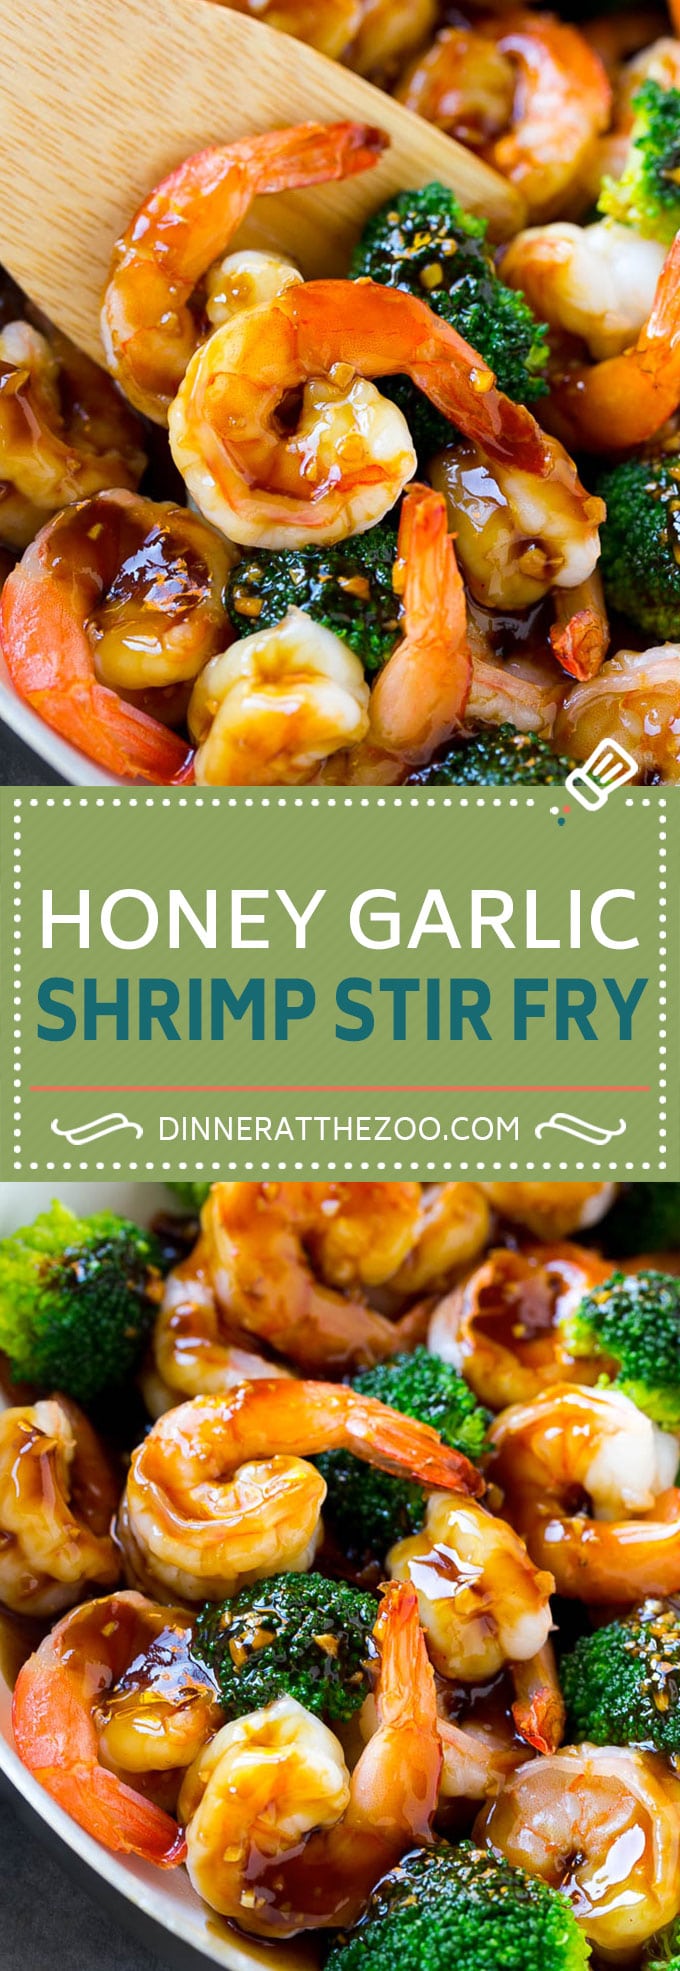 Honey Garlic Shrimp Stir Fry Recipe | Shrimp and Broccoli | Shrimp and Broccoli Stir Fry | Shrimp Stir Fry | Healthy Shrimp Recipe #shrimp #garlic #stirfry #broccoli #healthy #dinner #dinneratthezoo